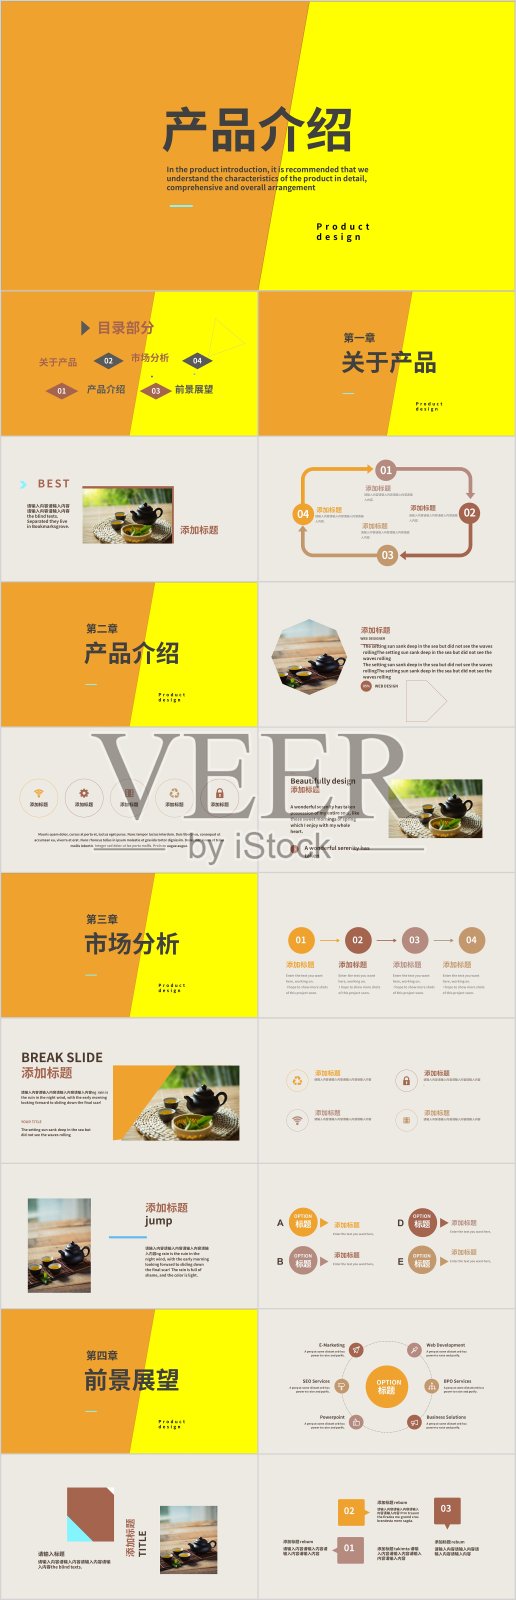 橙黄色简约企业介绍商务宣传通用PPT模板4335素材